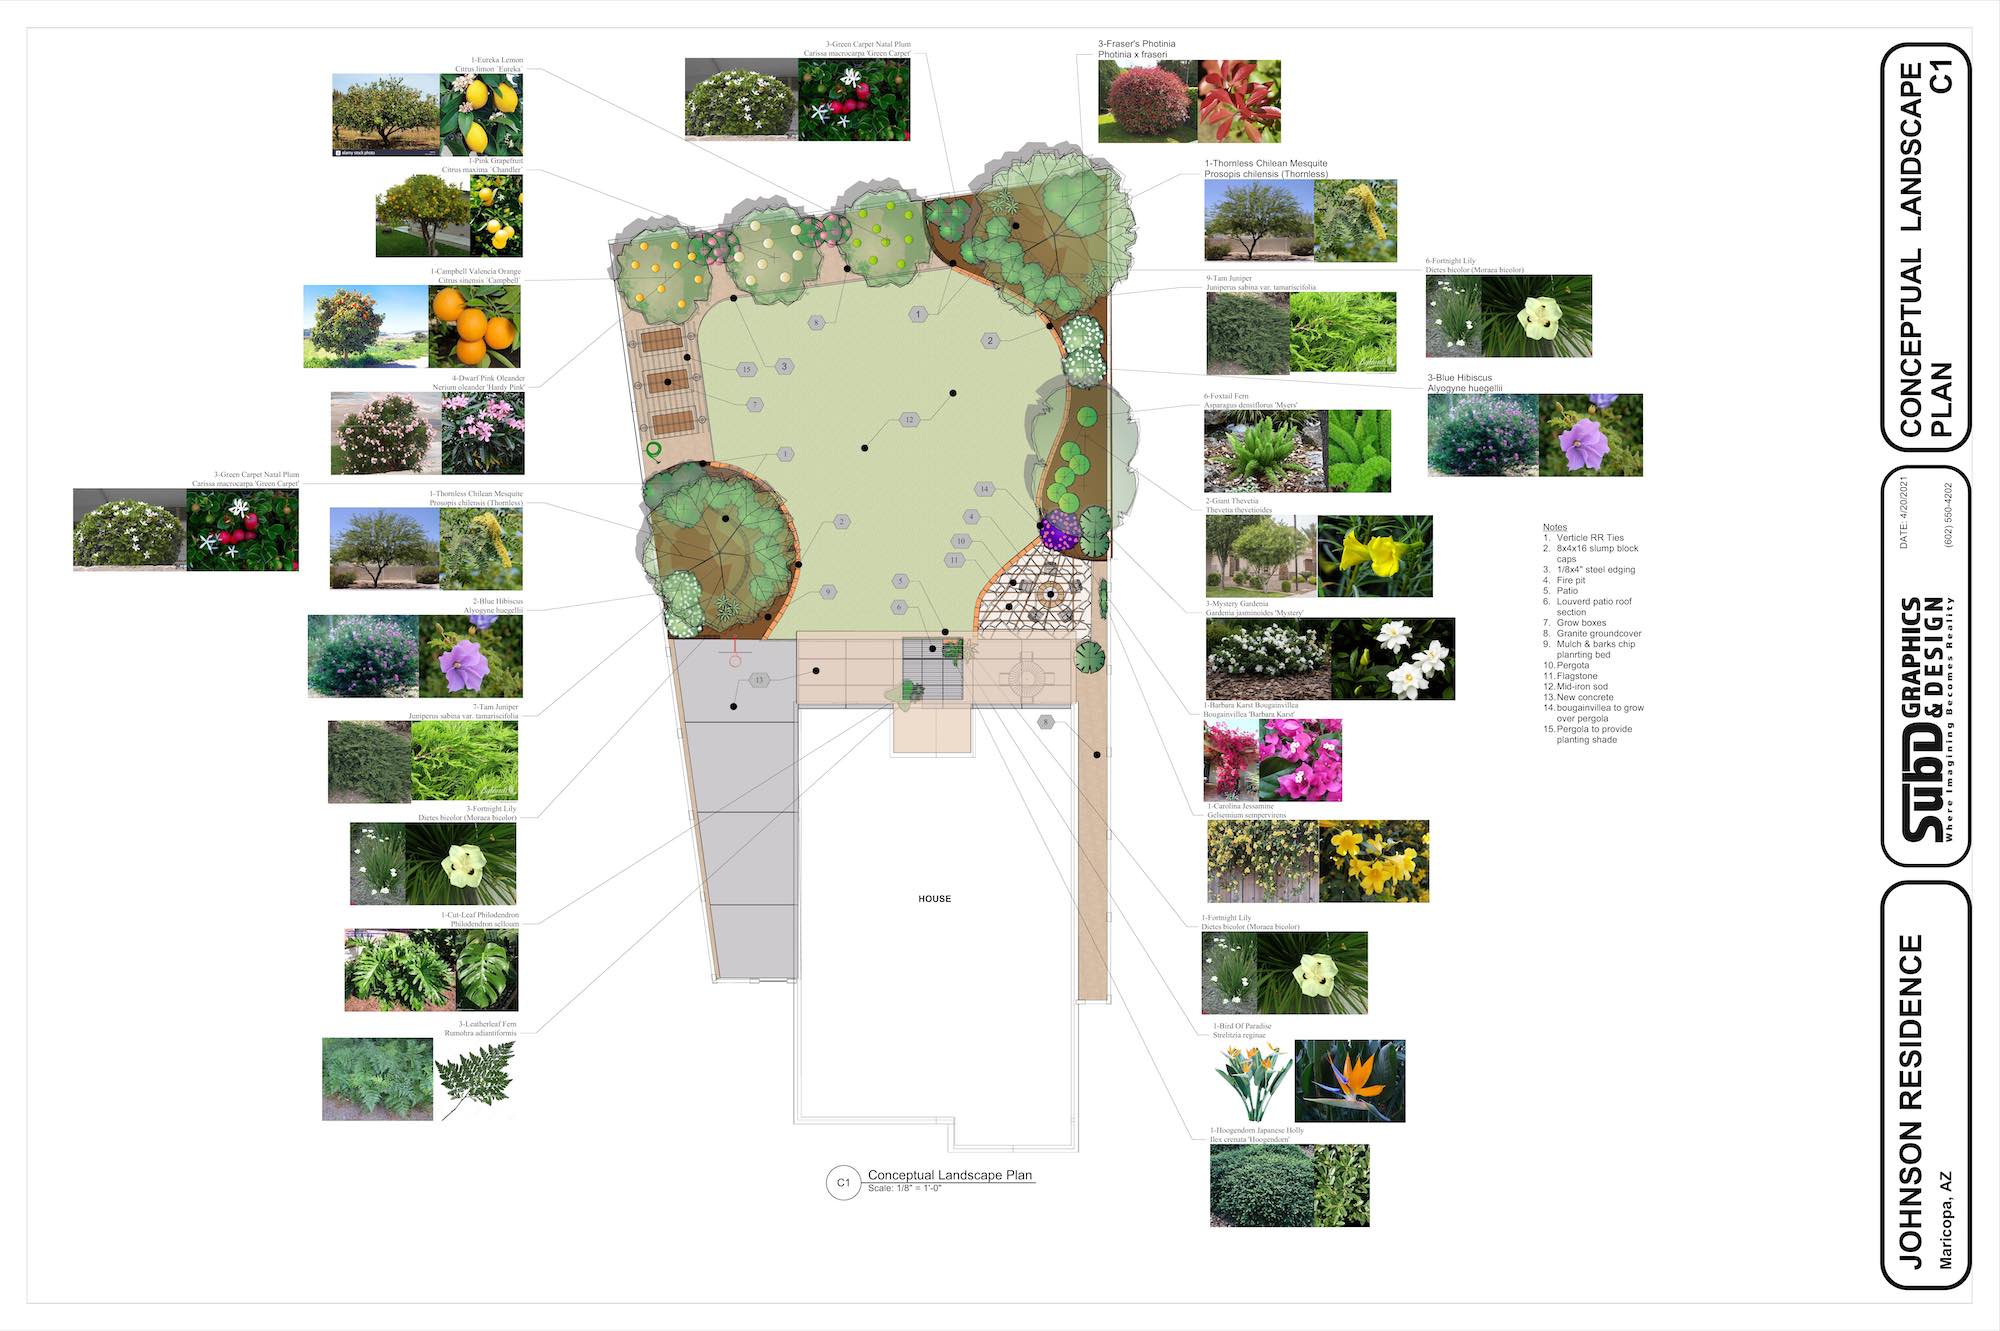 Johnson Conceptual Landscape Plan